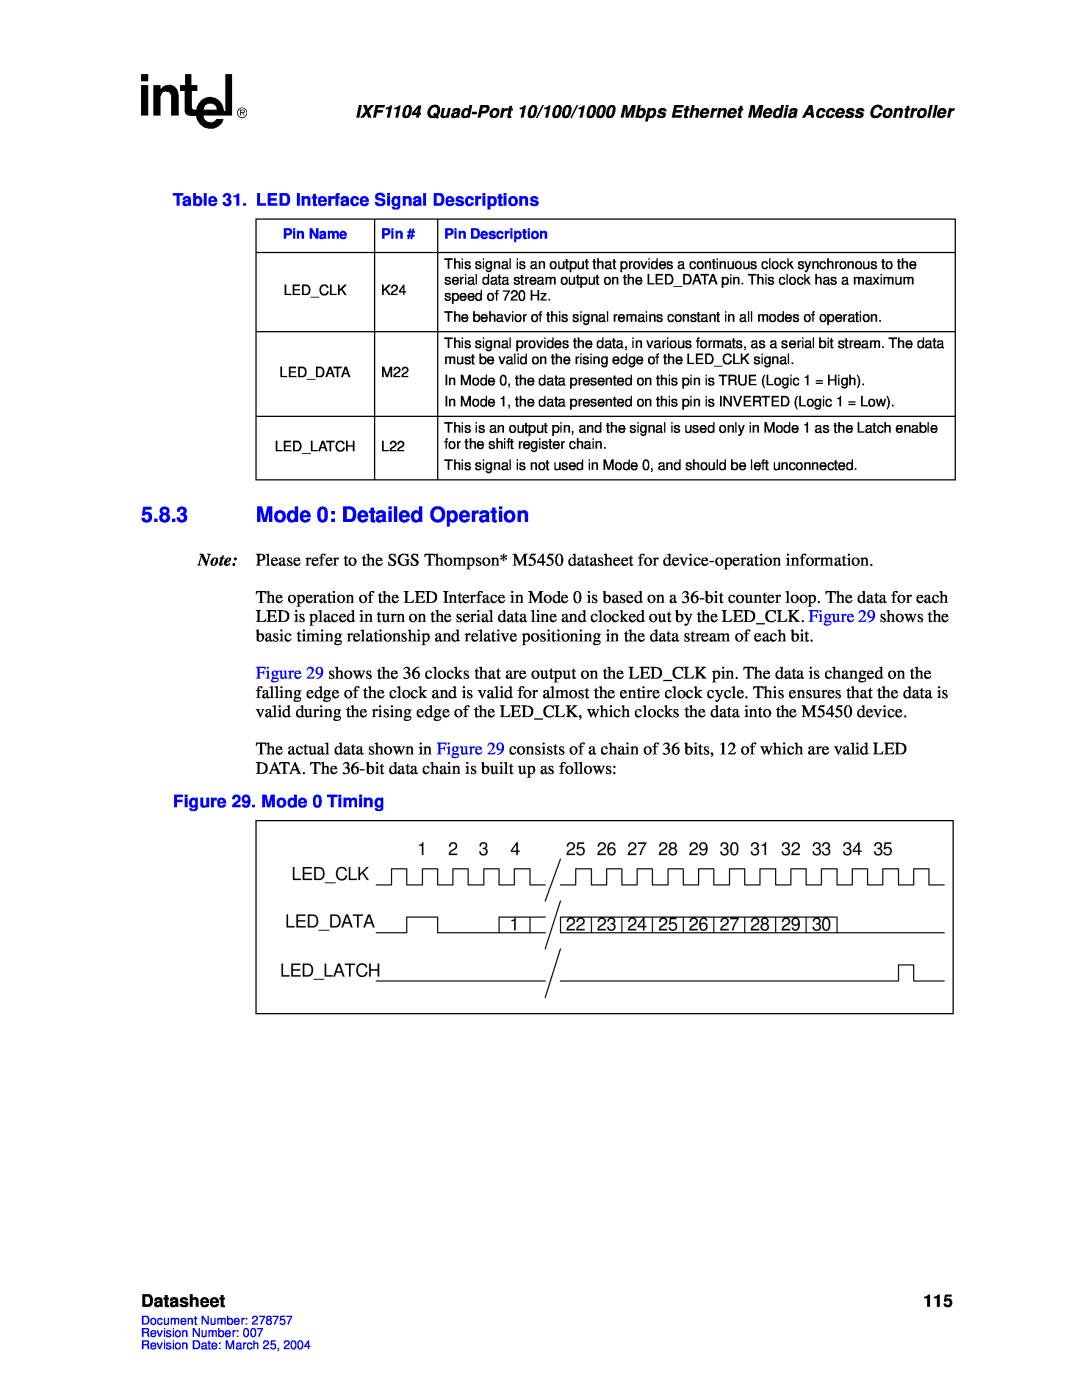 Intel IXF1104 manual 5.8.3Mode 0: Detailed Operation, Datasheet 